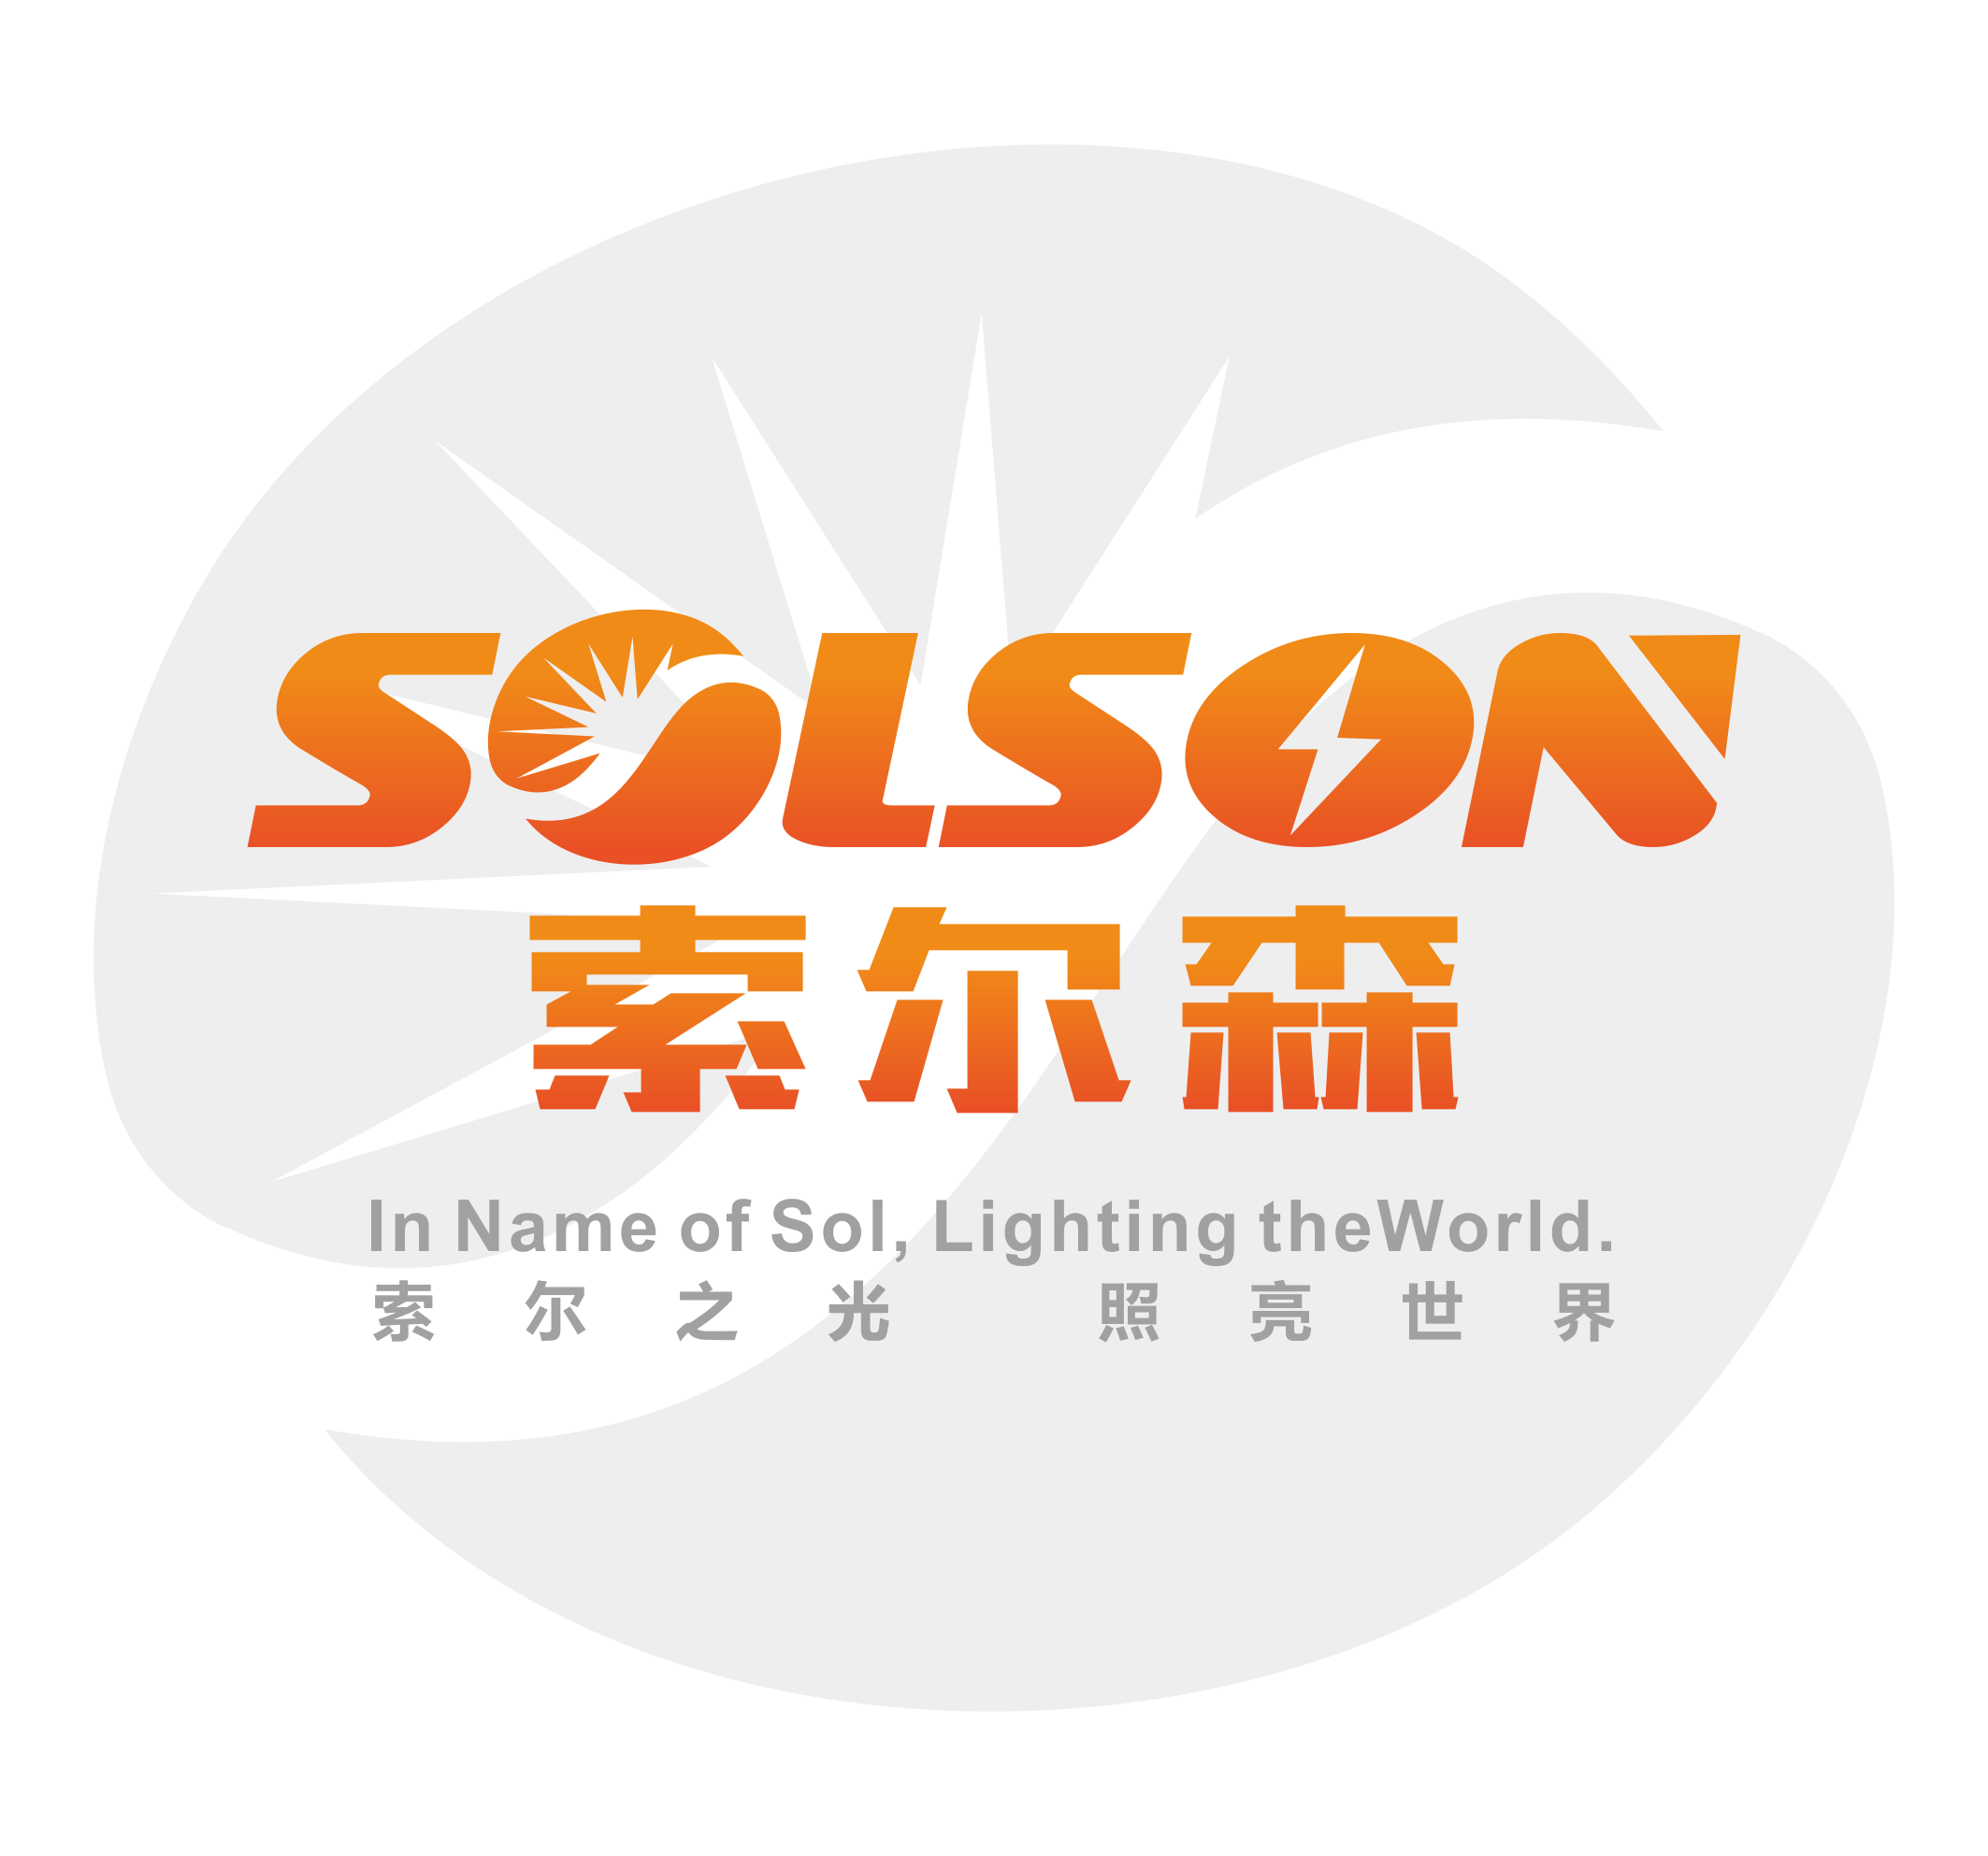 广州索尔森技术有限公司